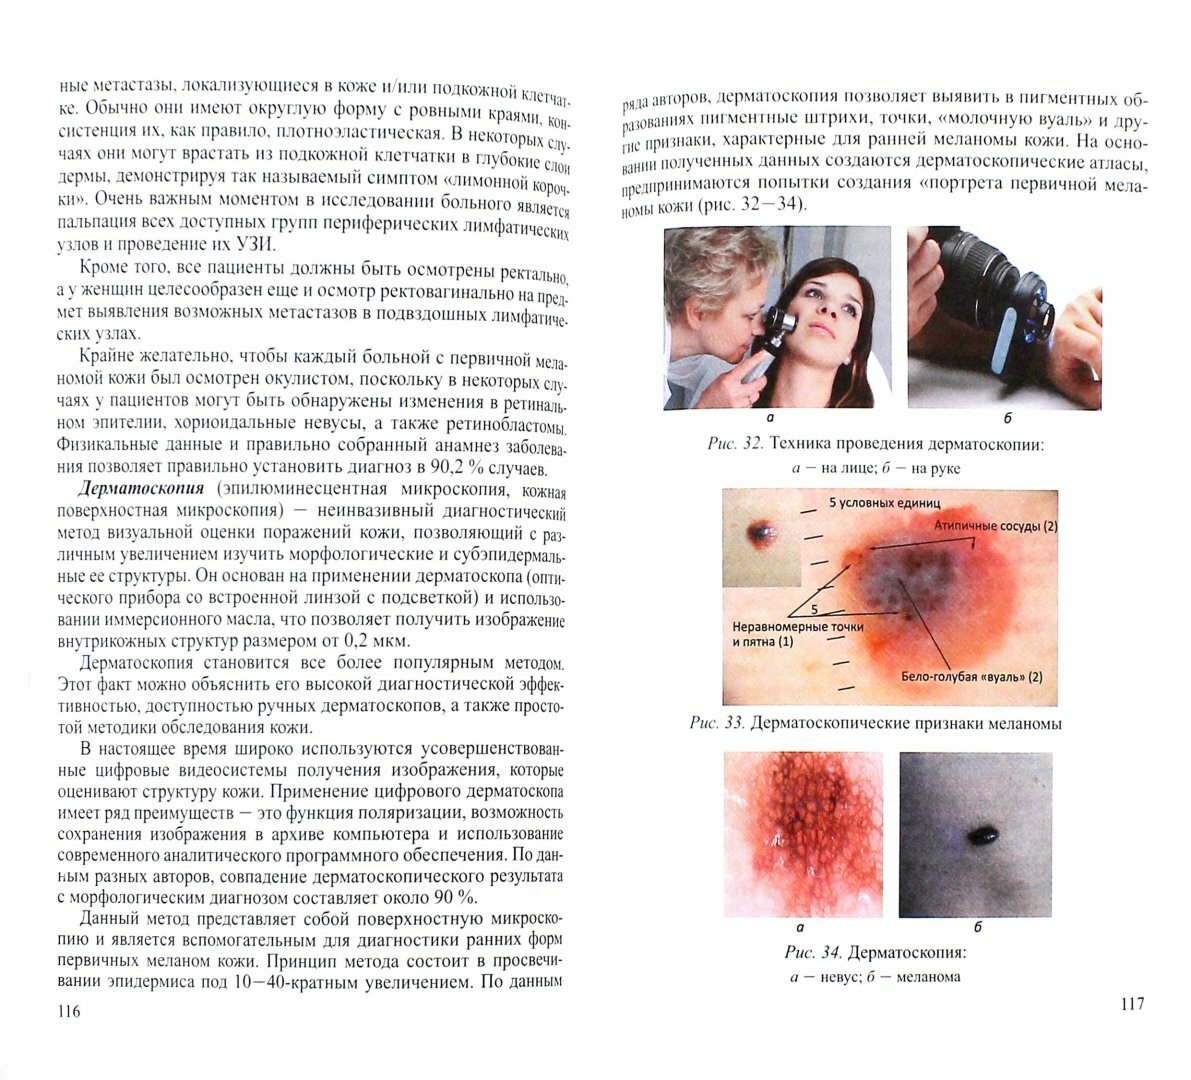 Злокачественные новообразования кожи. Клиника, диагностика, лечение и вопросы - фото №2